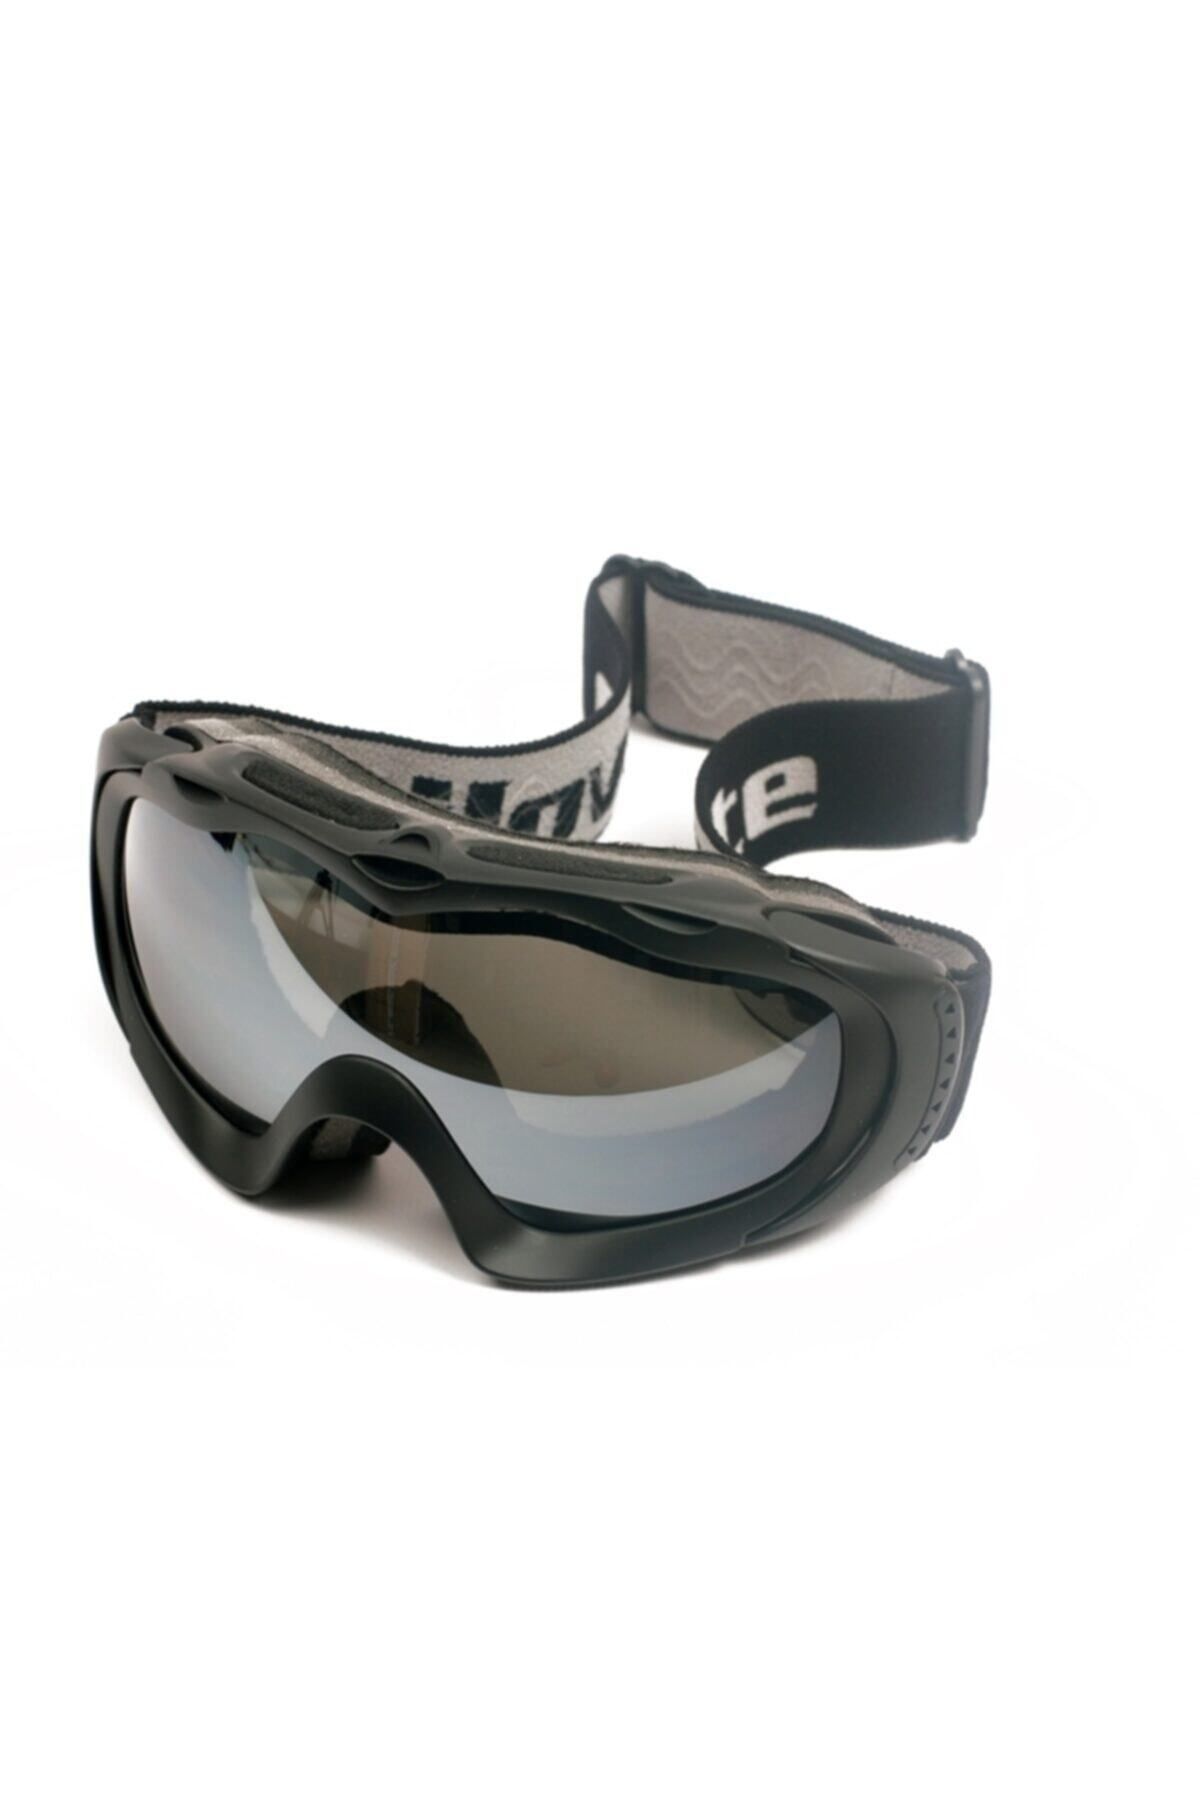 Sportlife Gtx - Sp210-b Kayak Gözlüğü